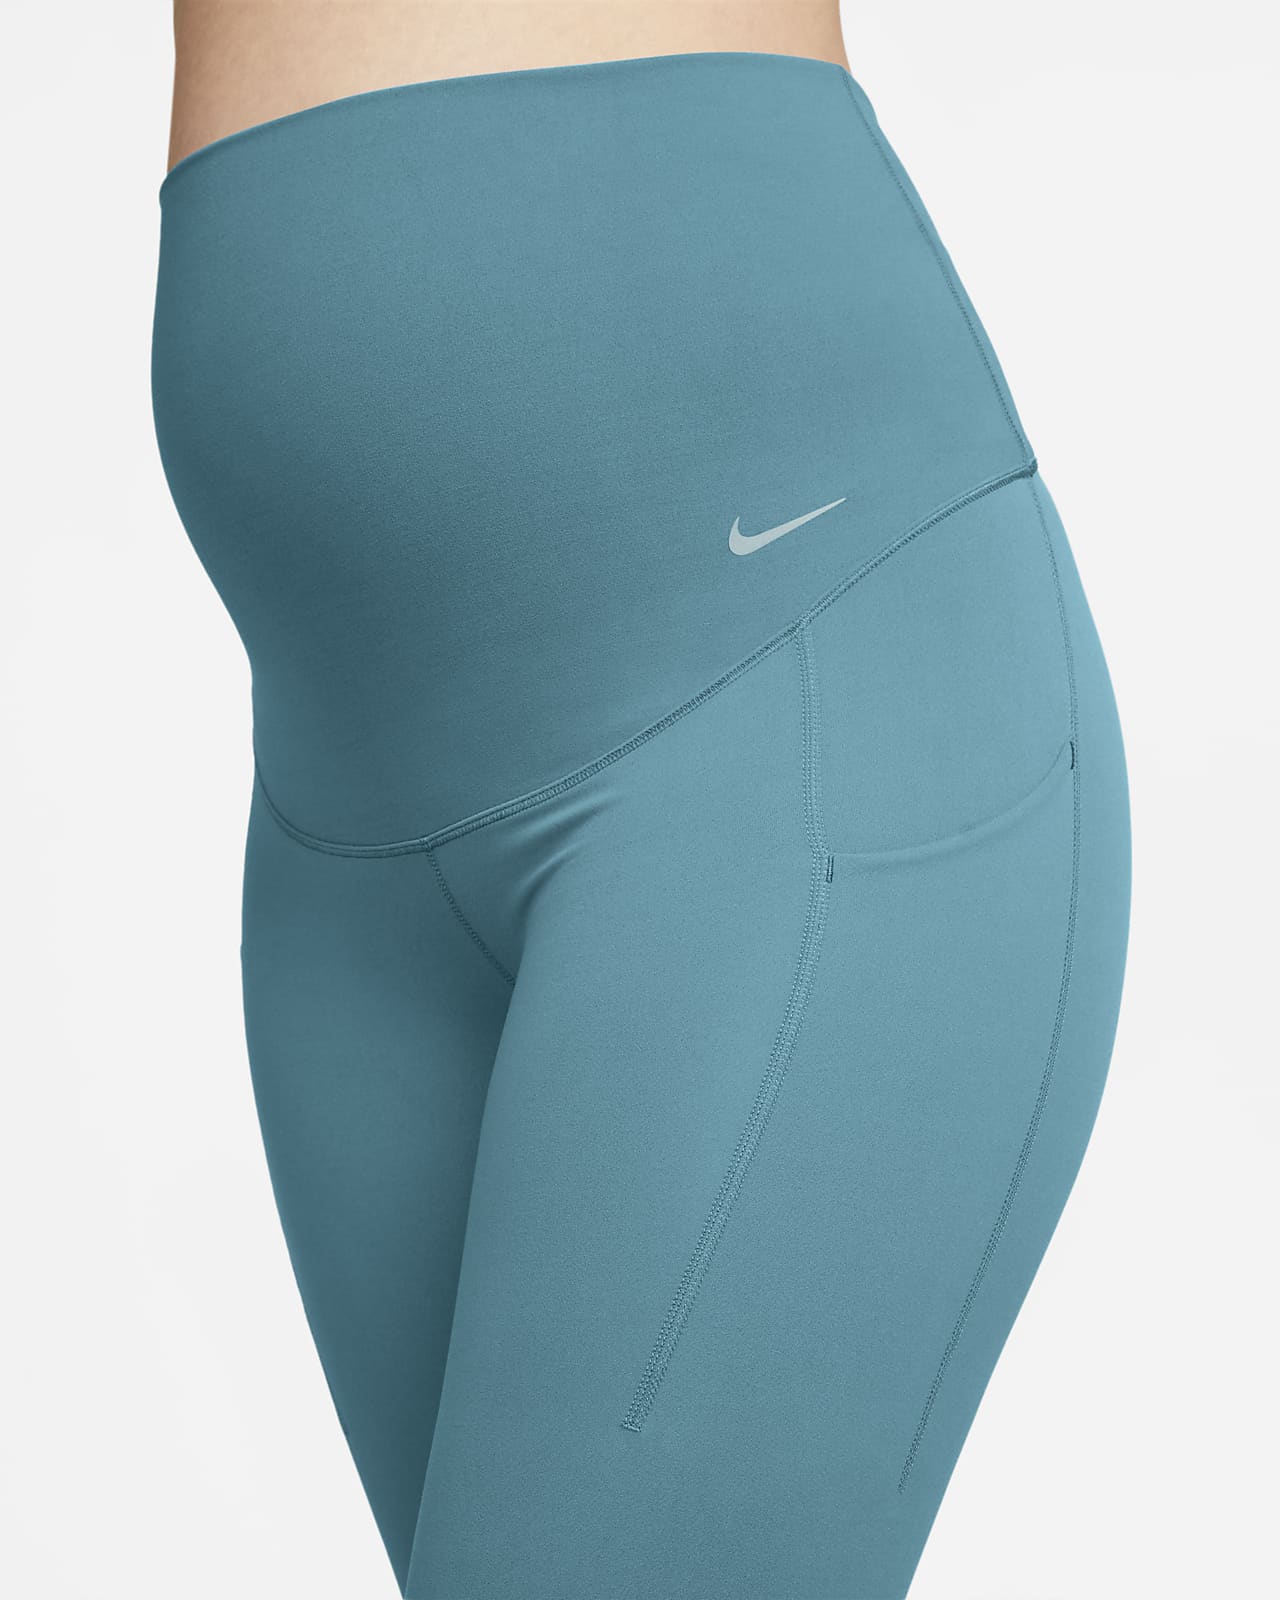 Nike Zenvy Women's Gentle-Support High-Waisted 7/8 Leggings.